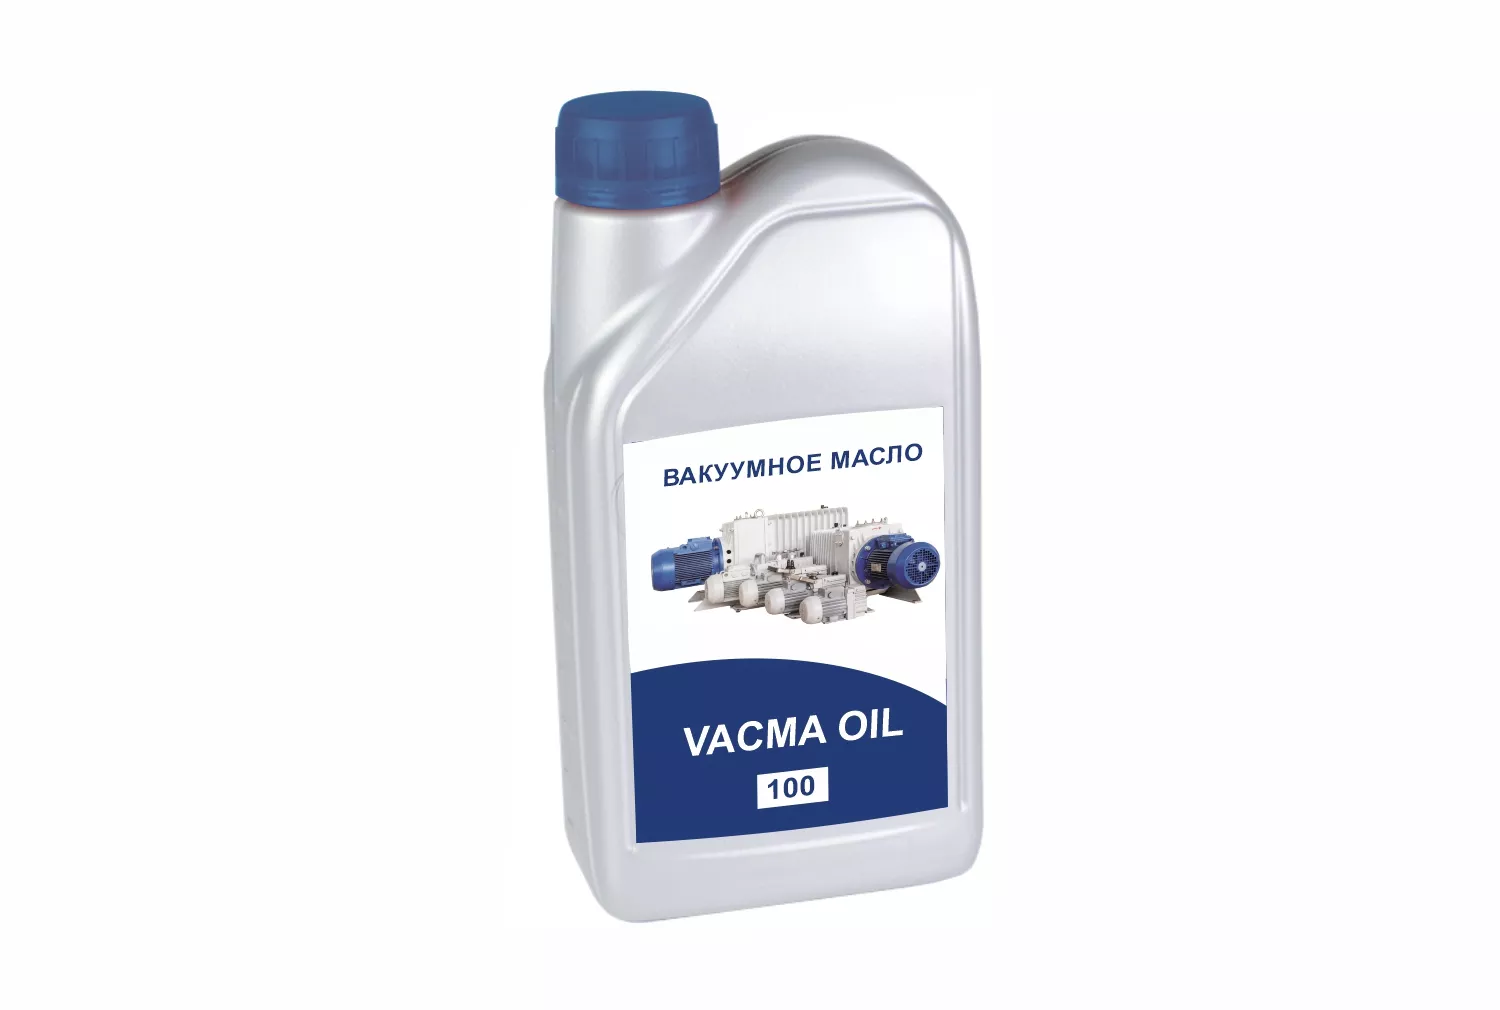 Купить в АО Вакууммаш ✓ Минеральное вакуумное масло VACMA OIL 100 по цене производителя